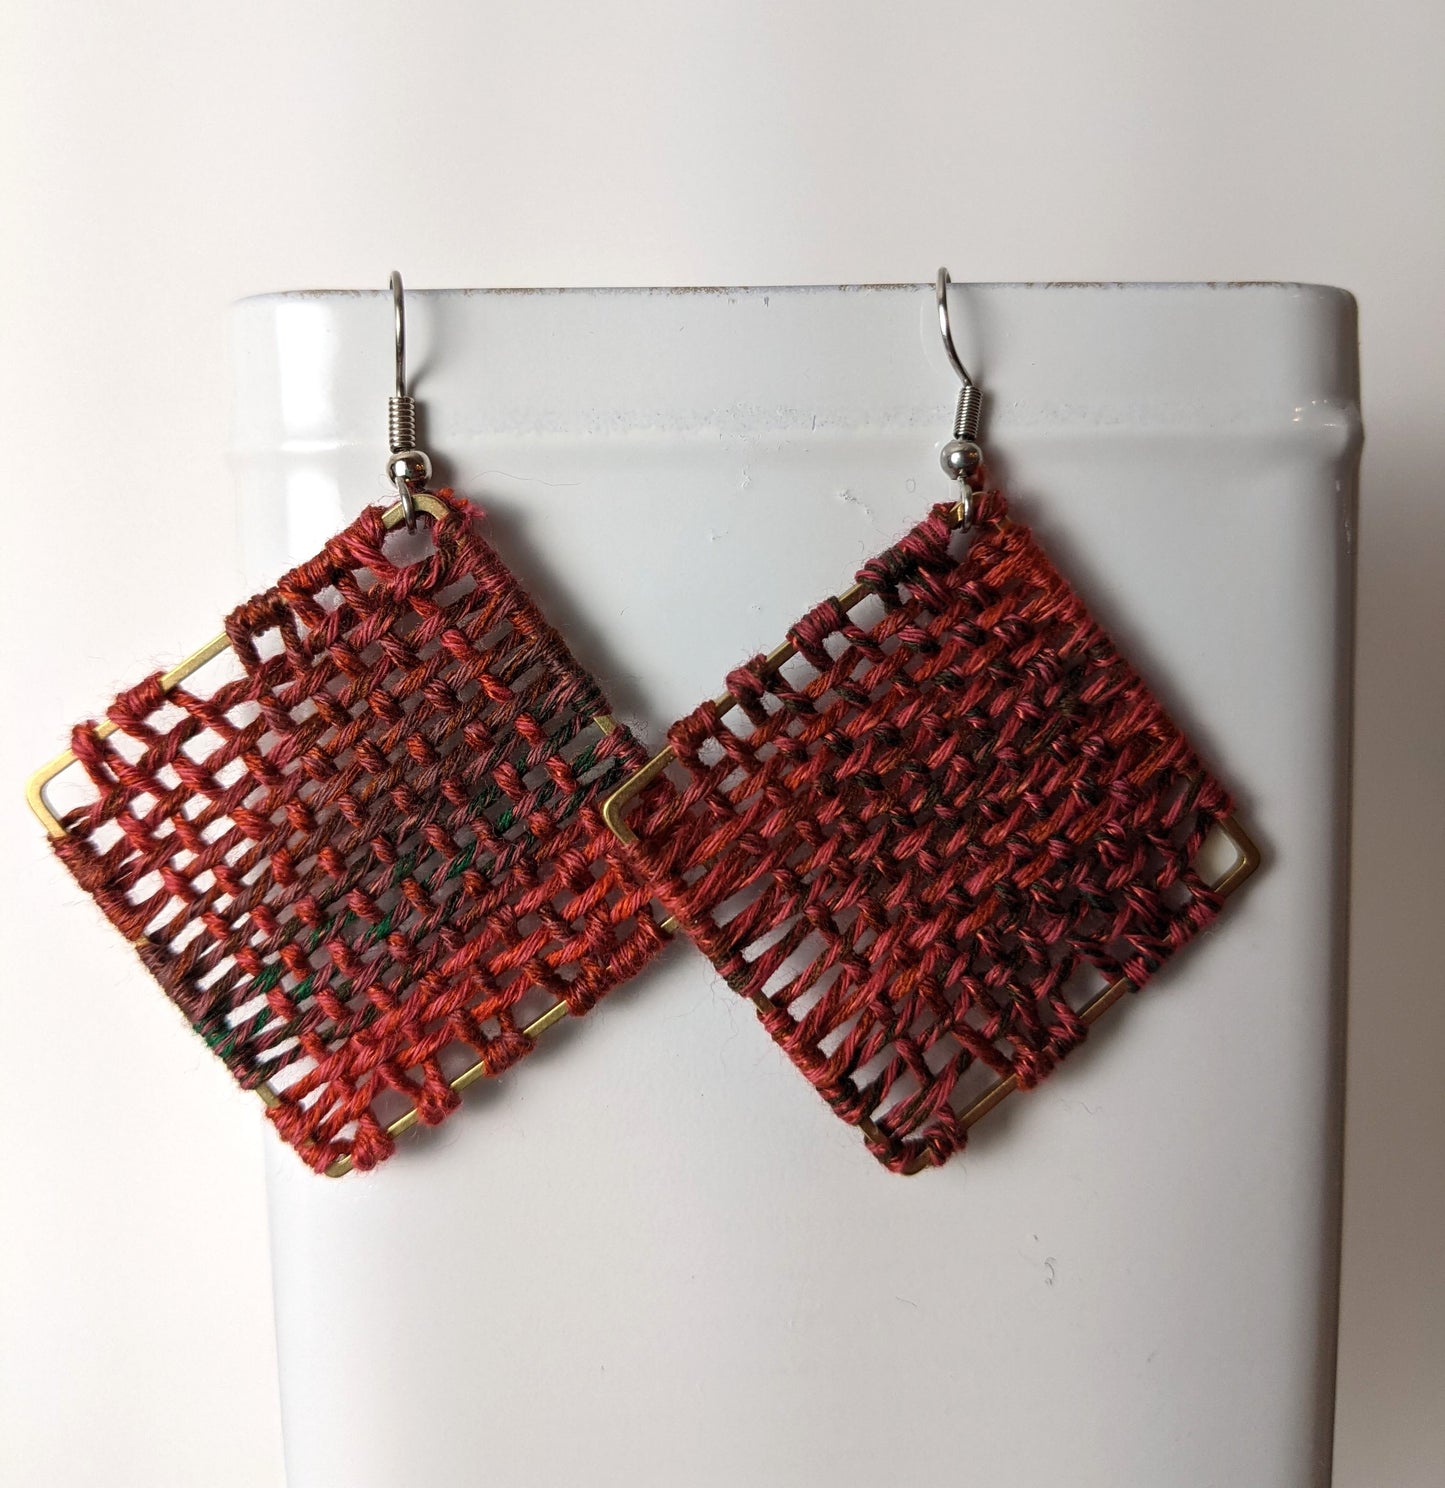 Fiber Art Woven Earrings by Shari Frost-Job